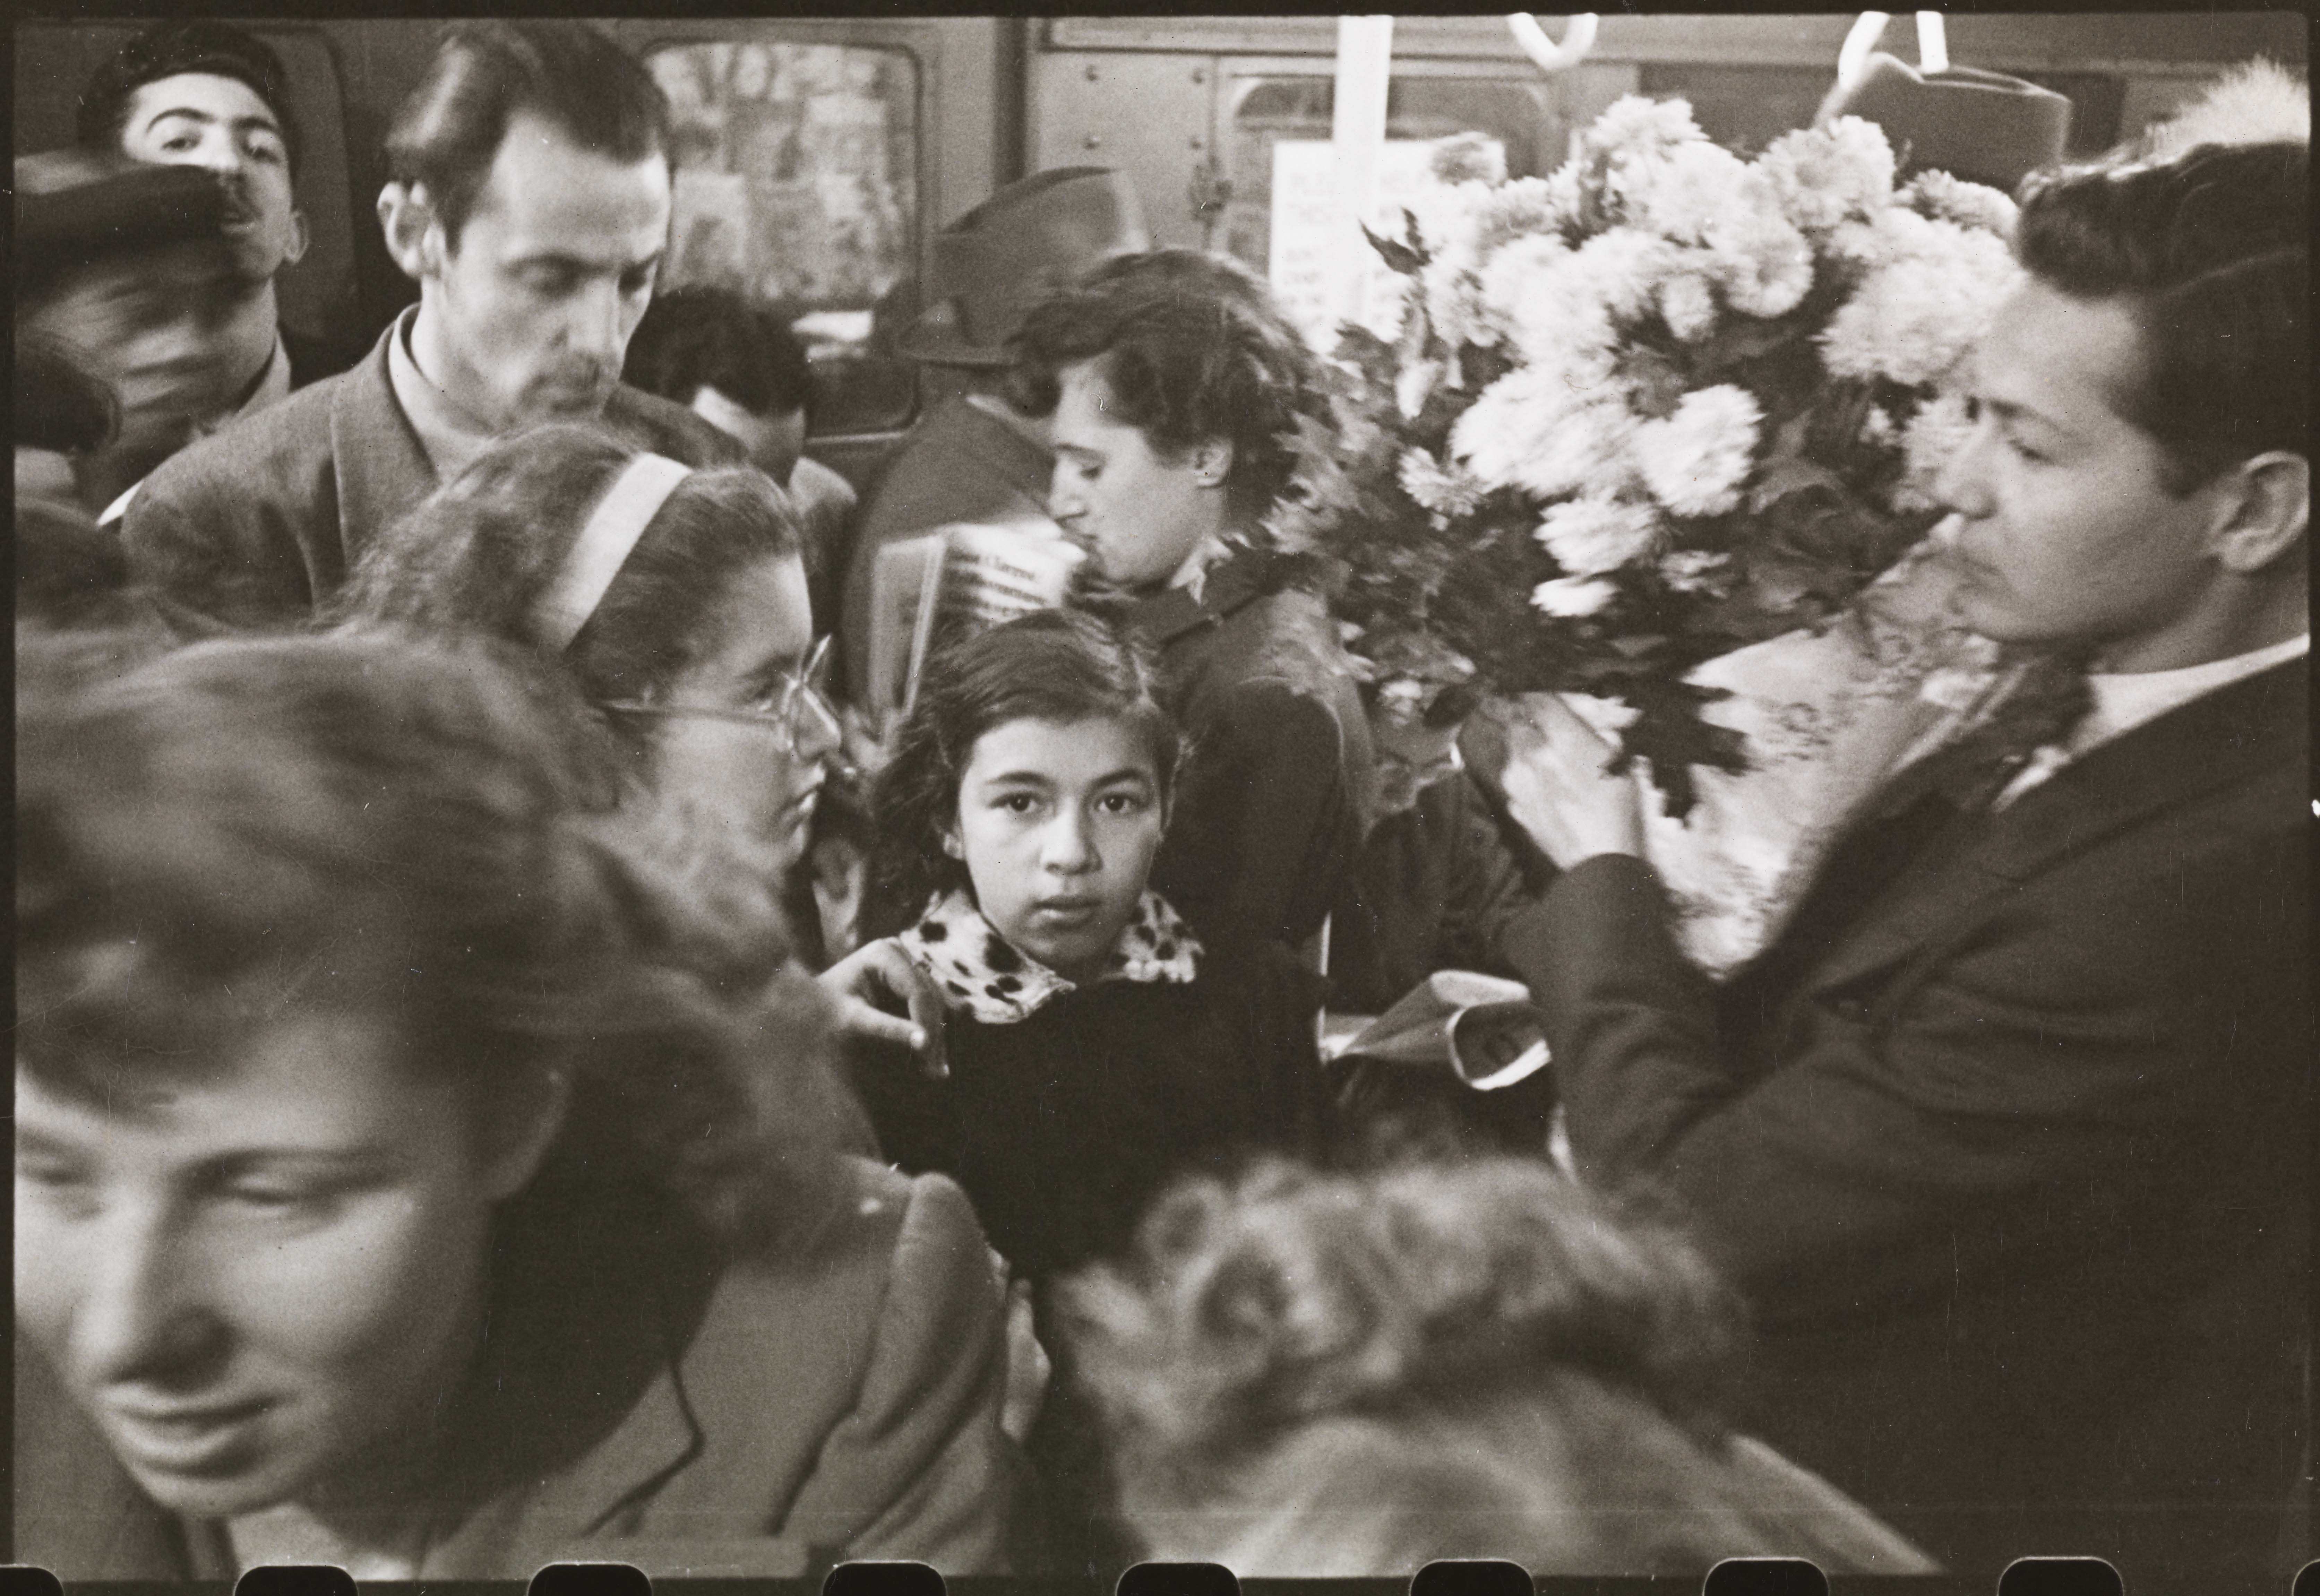 Stanley Kubrick. Vida y amor en el metro de Nueva York. Hombre llevando flores en un metro lleno de gente. 1946. Museo de la ciudad de Nueva York. X2011.4.10292.37C